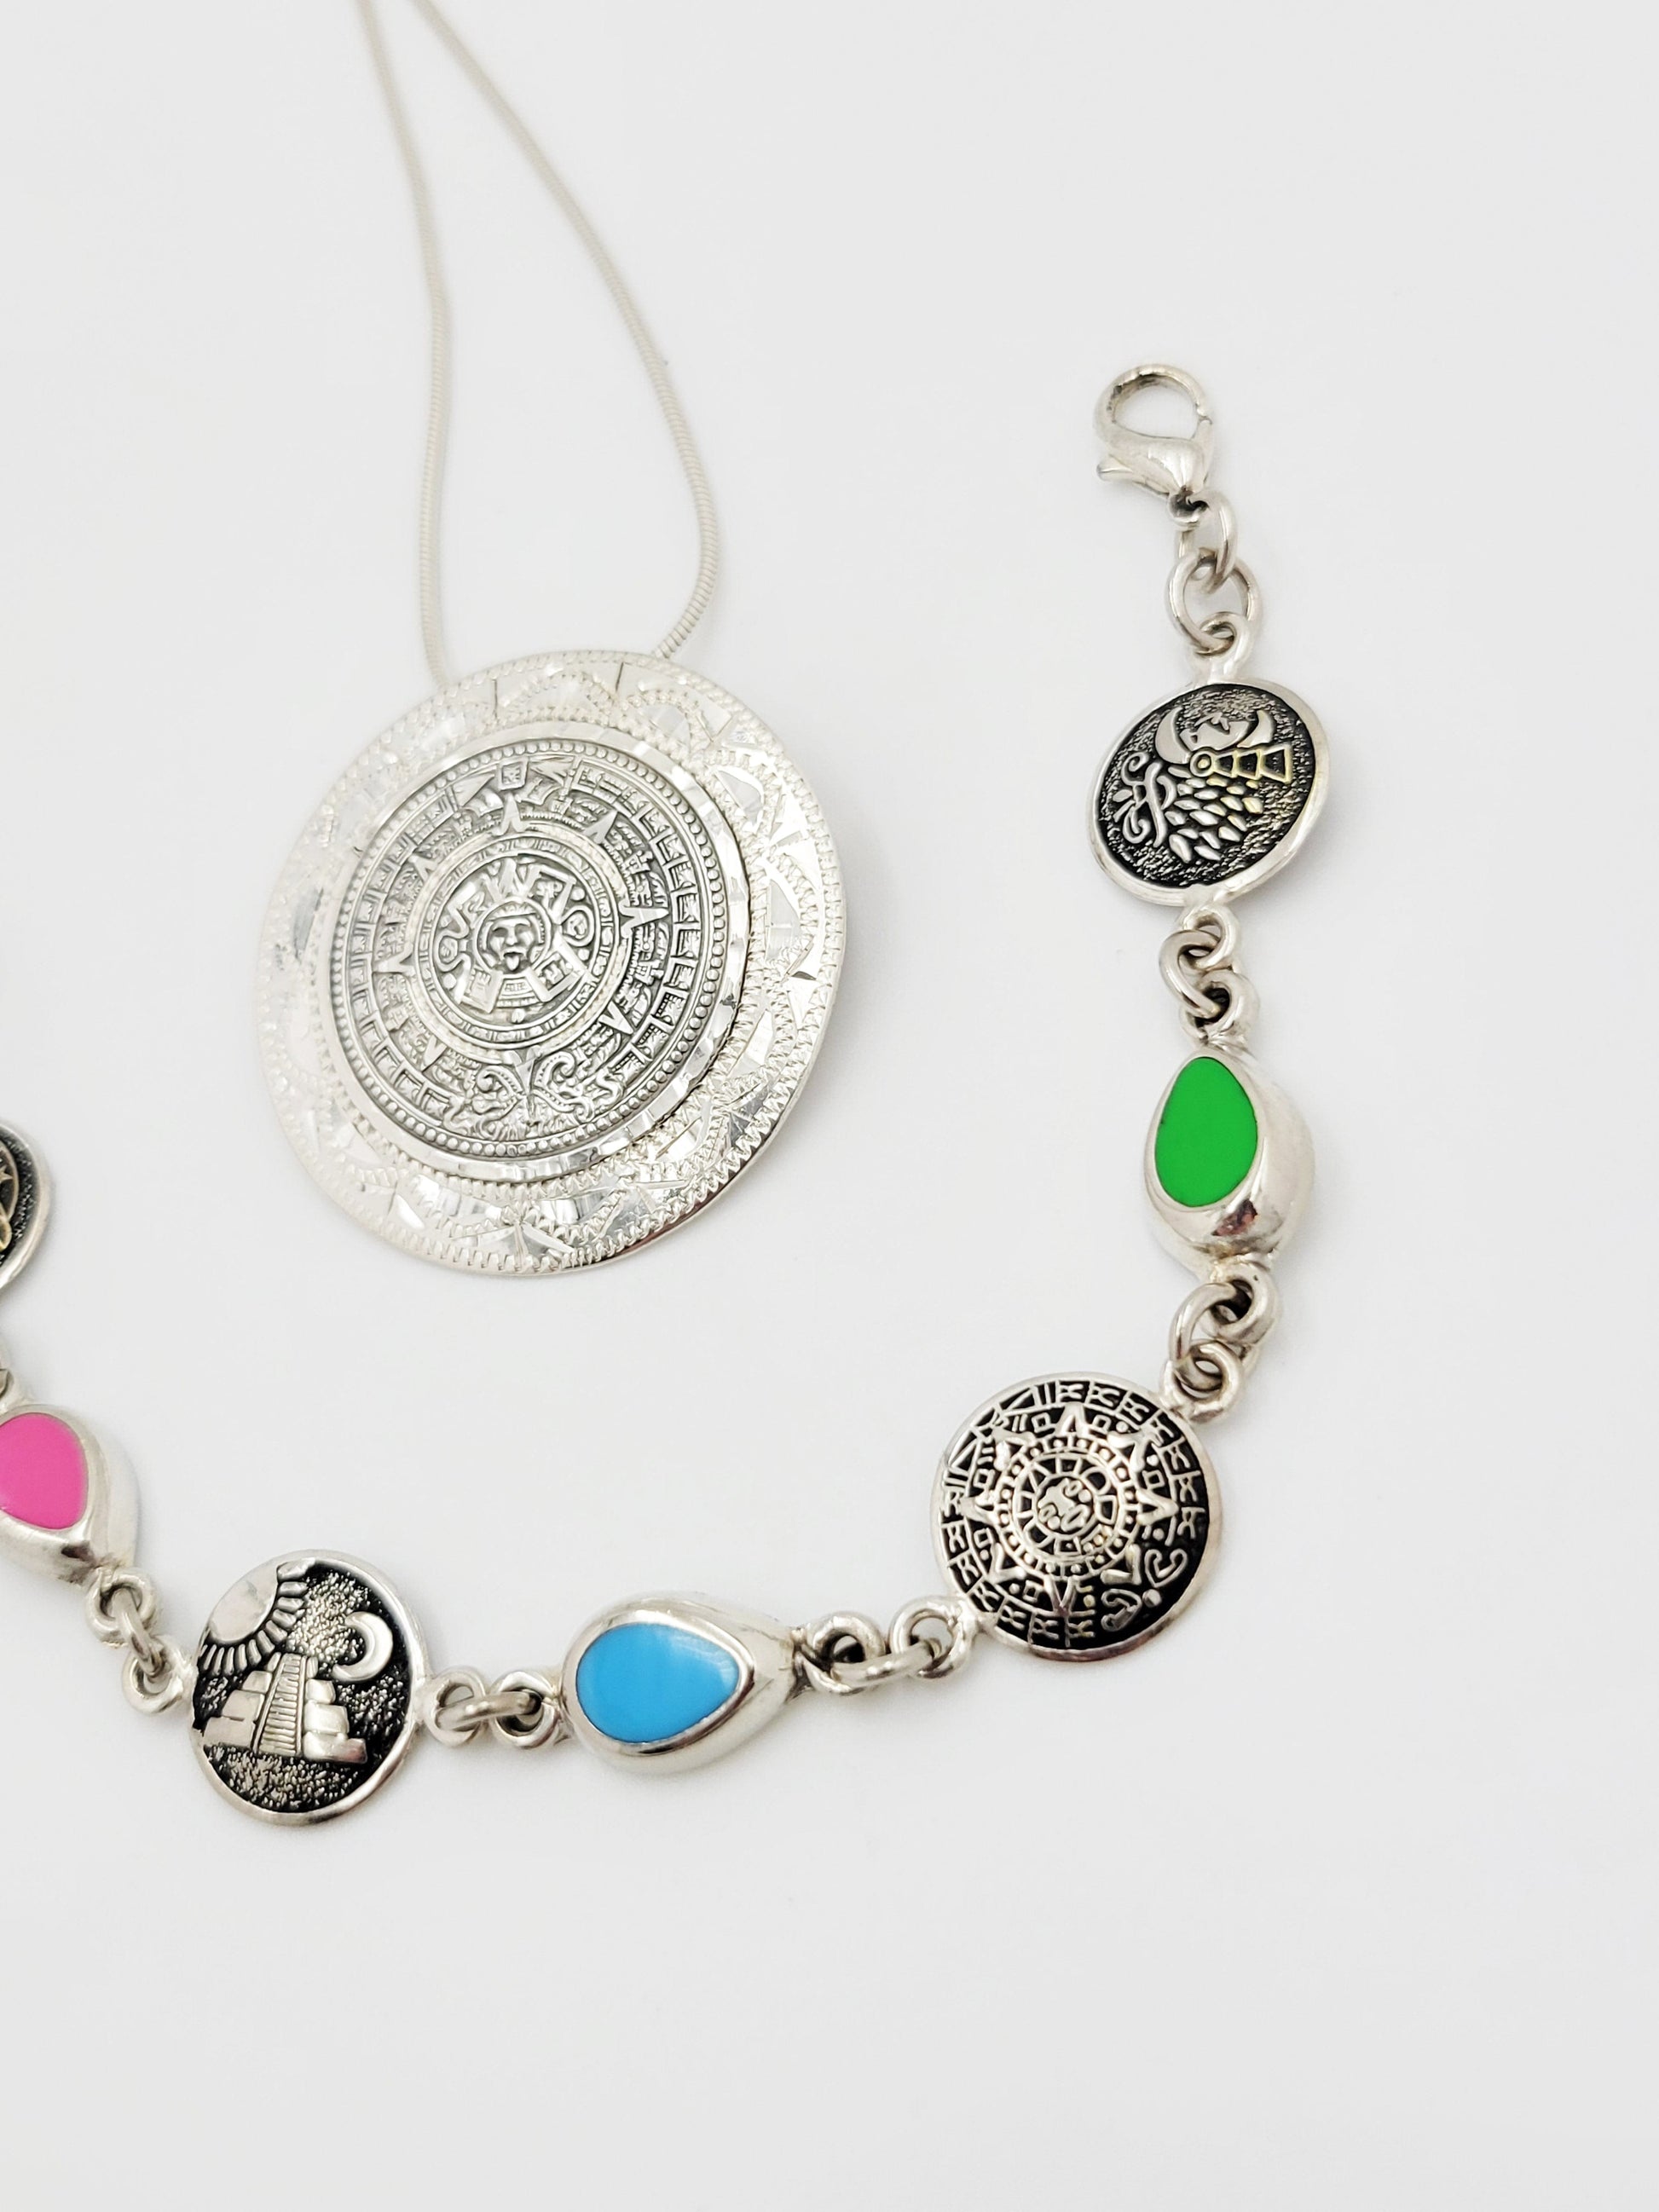 Stain Glass Bracelet Necklace Set Jewelry Vintage Taxco Multi-Stone Mayan Calendar Necklace and Bracelet Set